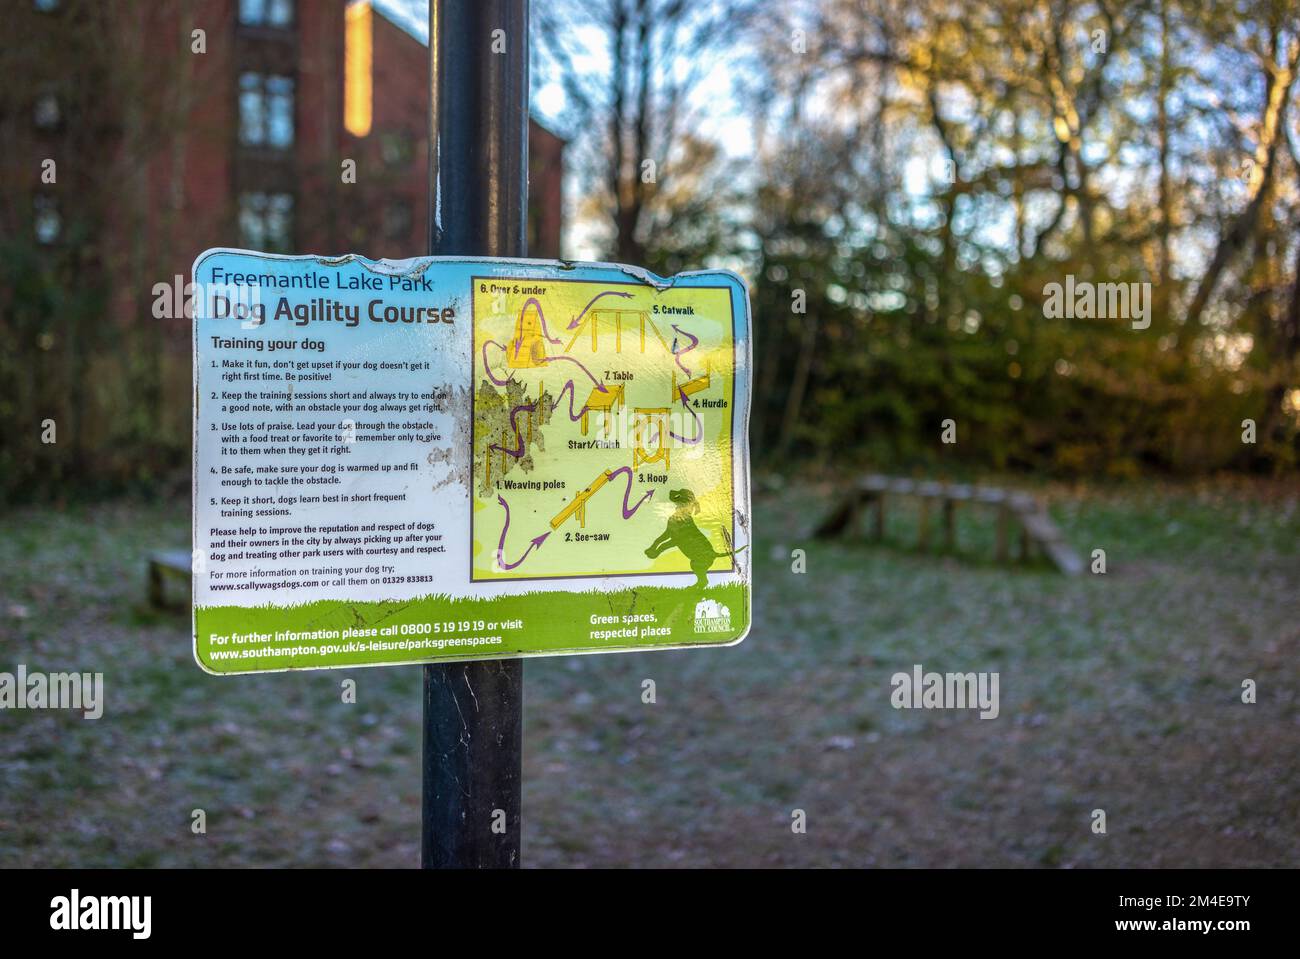 Dog agility course sign, England, UK Stock Photo